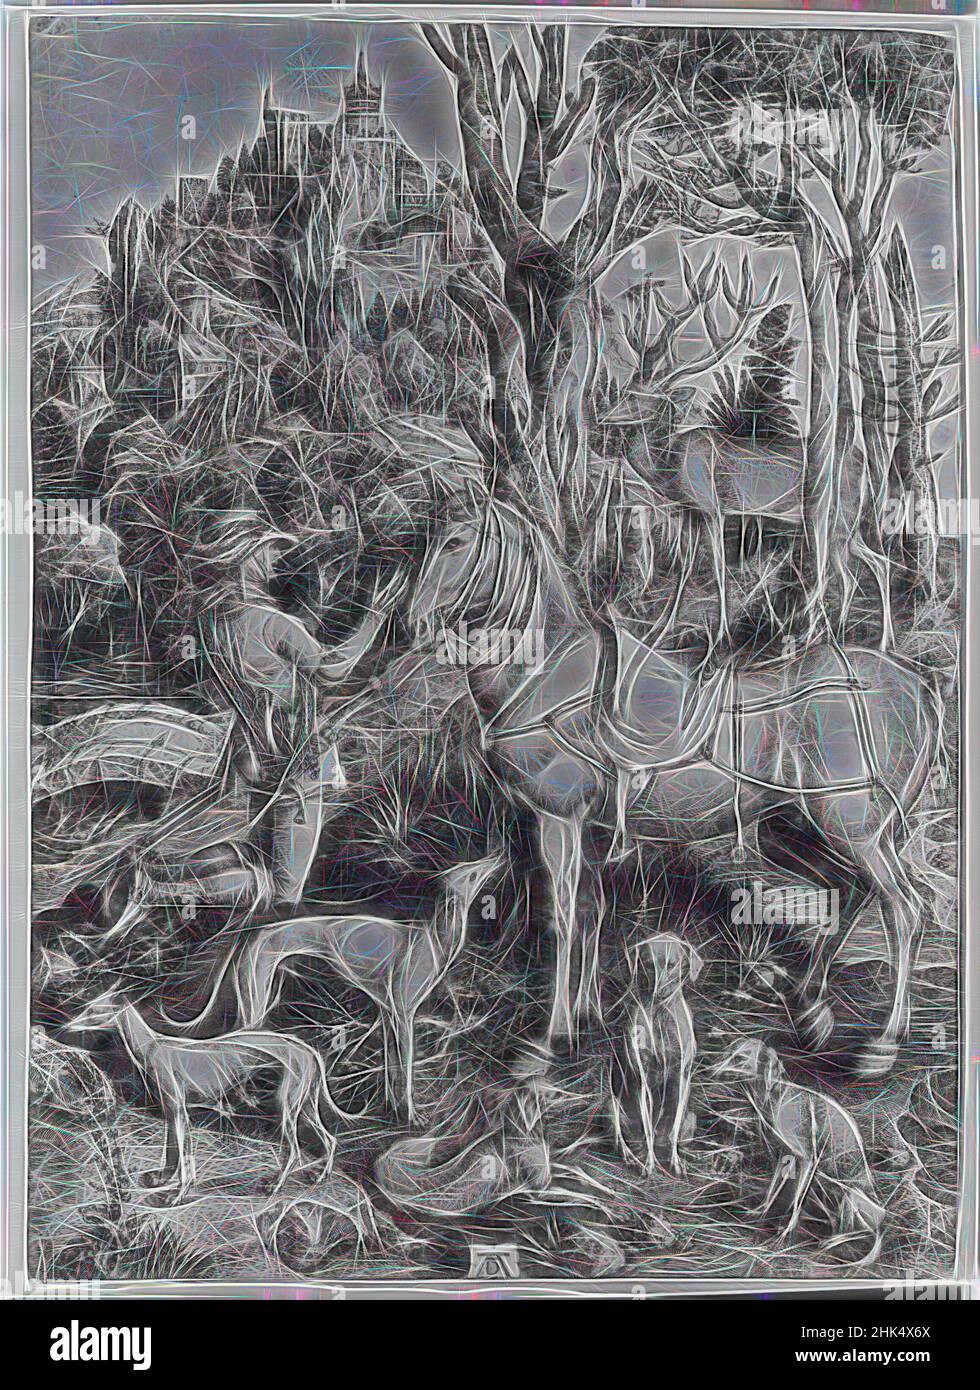 Inspiriert von St. Eustace, Albrecht Dürer, Deutsch, 1471-1528, Radierung auf gedrucktem Papier, 1561, 14 1/8 x 10 1/4 Zoll, 35,8 x 26 cm, neu gestaltet von Artotop. Klassische Kunst neu erfunden mit einem modernen Twist. Design von warmen fröhlichen Leuchten der Helligkeit und Lichtstrahl Strahlkraft. Fotografie inspiriert von Surrealismus und Futurismus, umarmt dynamische Energie der modernen Technologie, Bewegung, Geschwindigkeit und Kultur zu revolutionieren Stockfoto